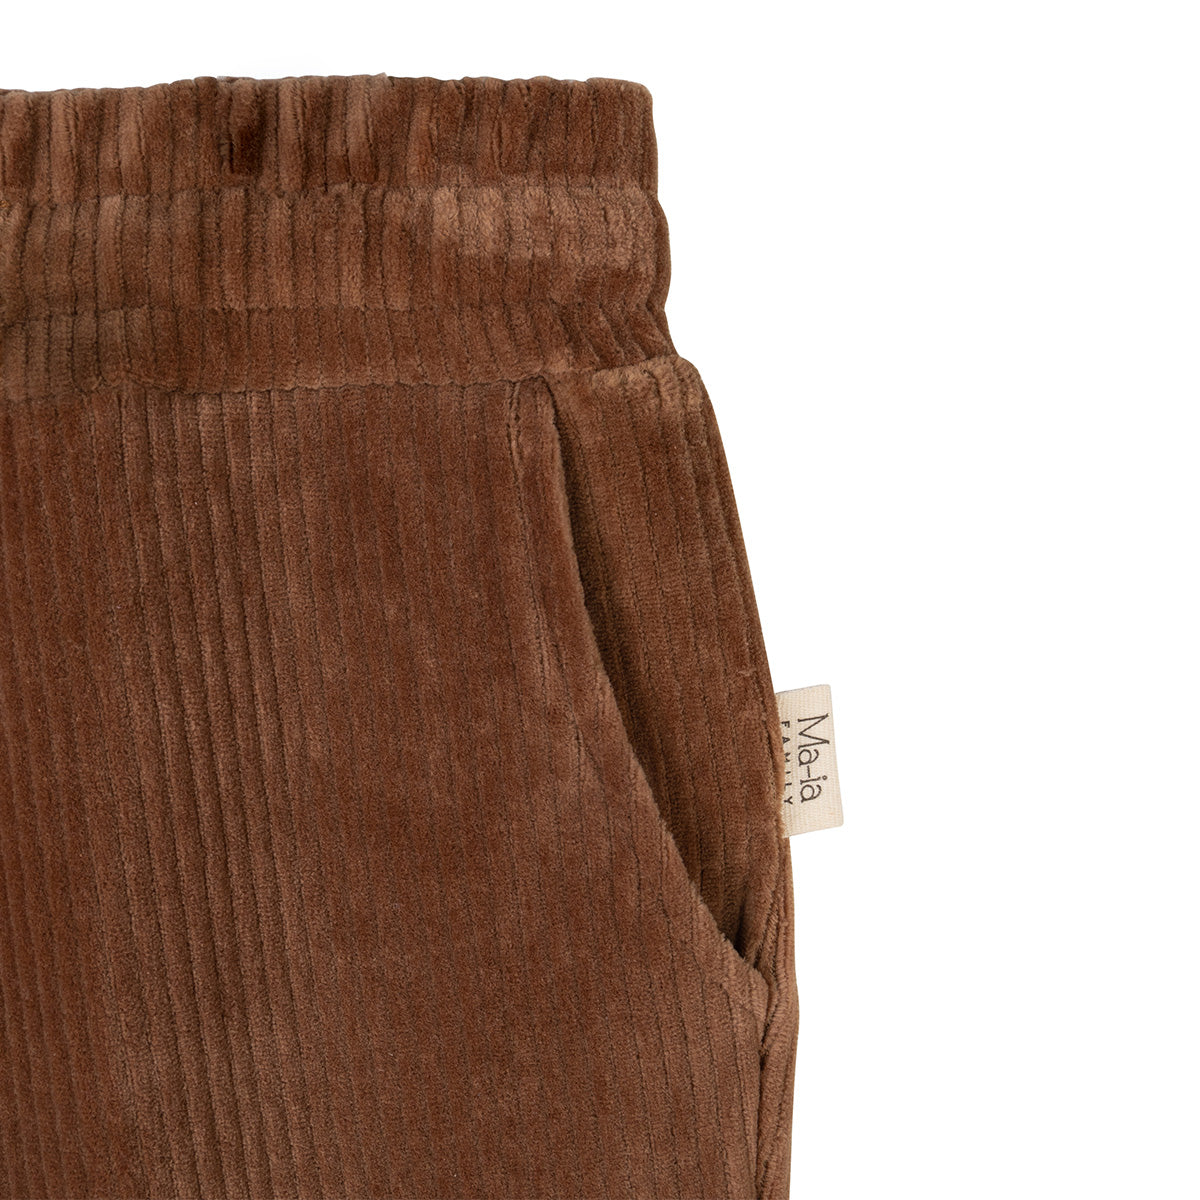 Merri Trousers, brown